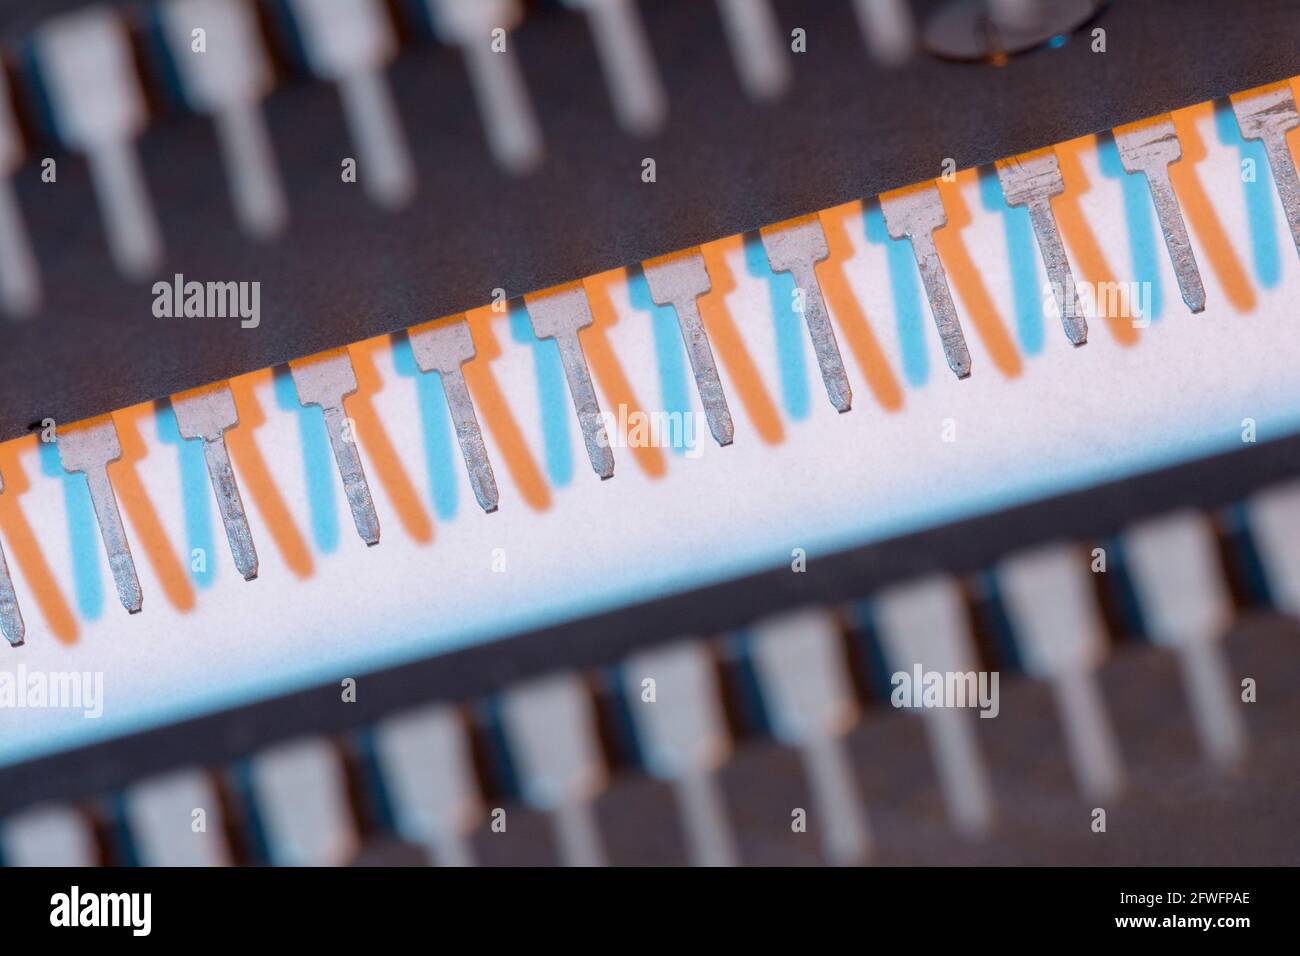 Makroaufnahme der Stiftschaltungen des Halbleiters PIC16F77-I/P von Microchip Technology. Für Elektronik abstrakt, Industriekomponenten abstrakt. Stockfoto